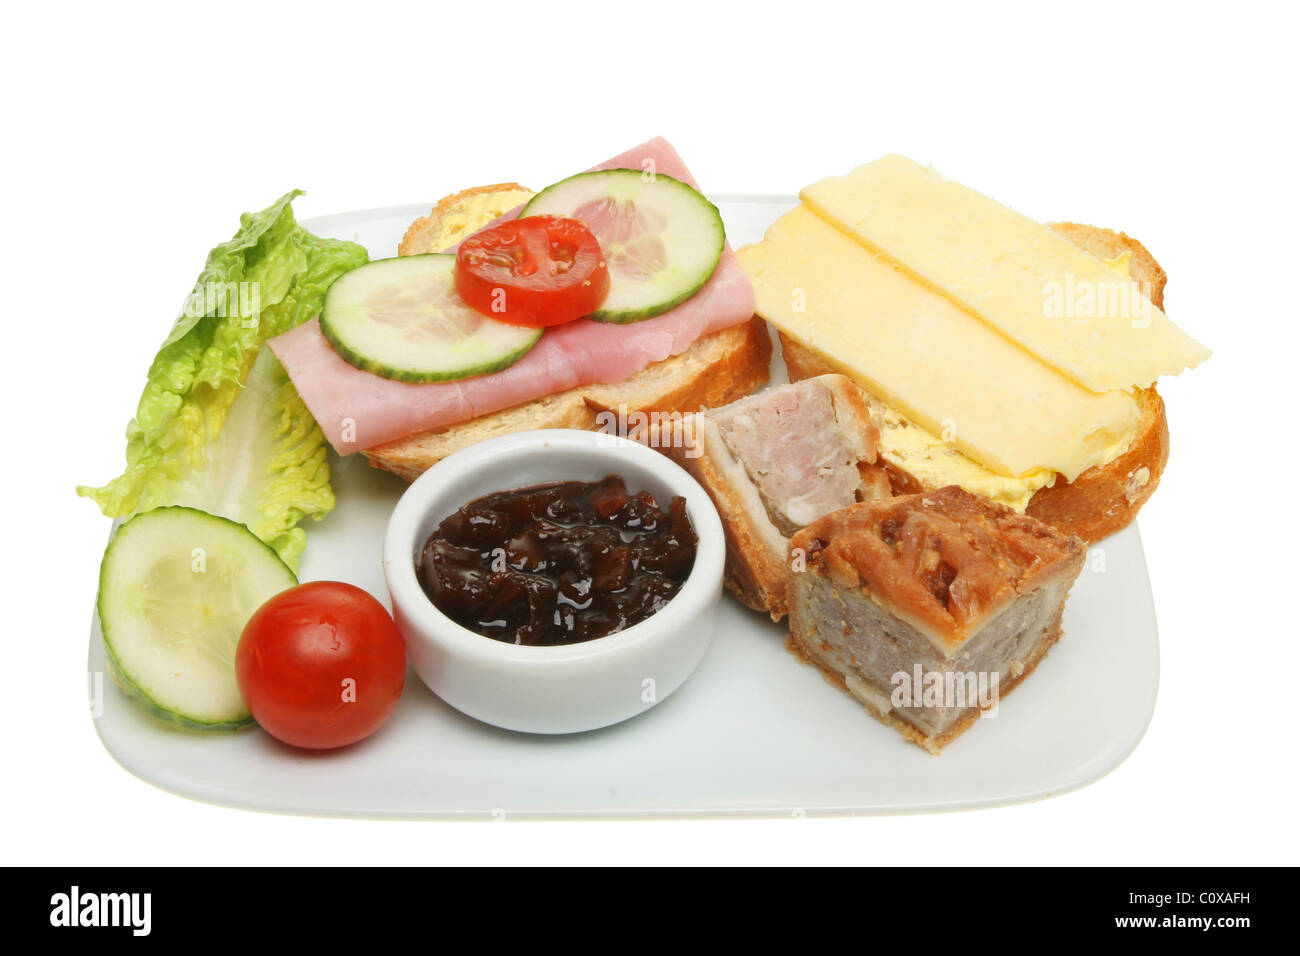 Plato de comida de cerdo, pasteles, pan, queso, jamón y ensalada aislado en blanco Foto de stock